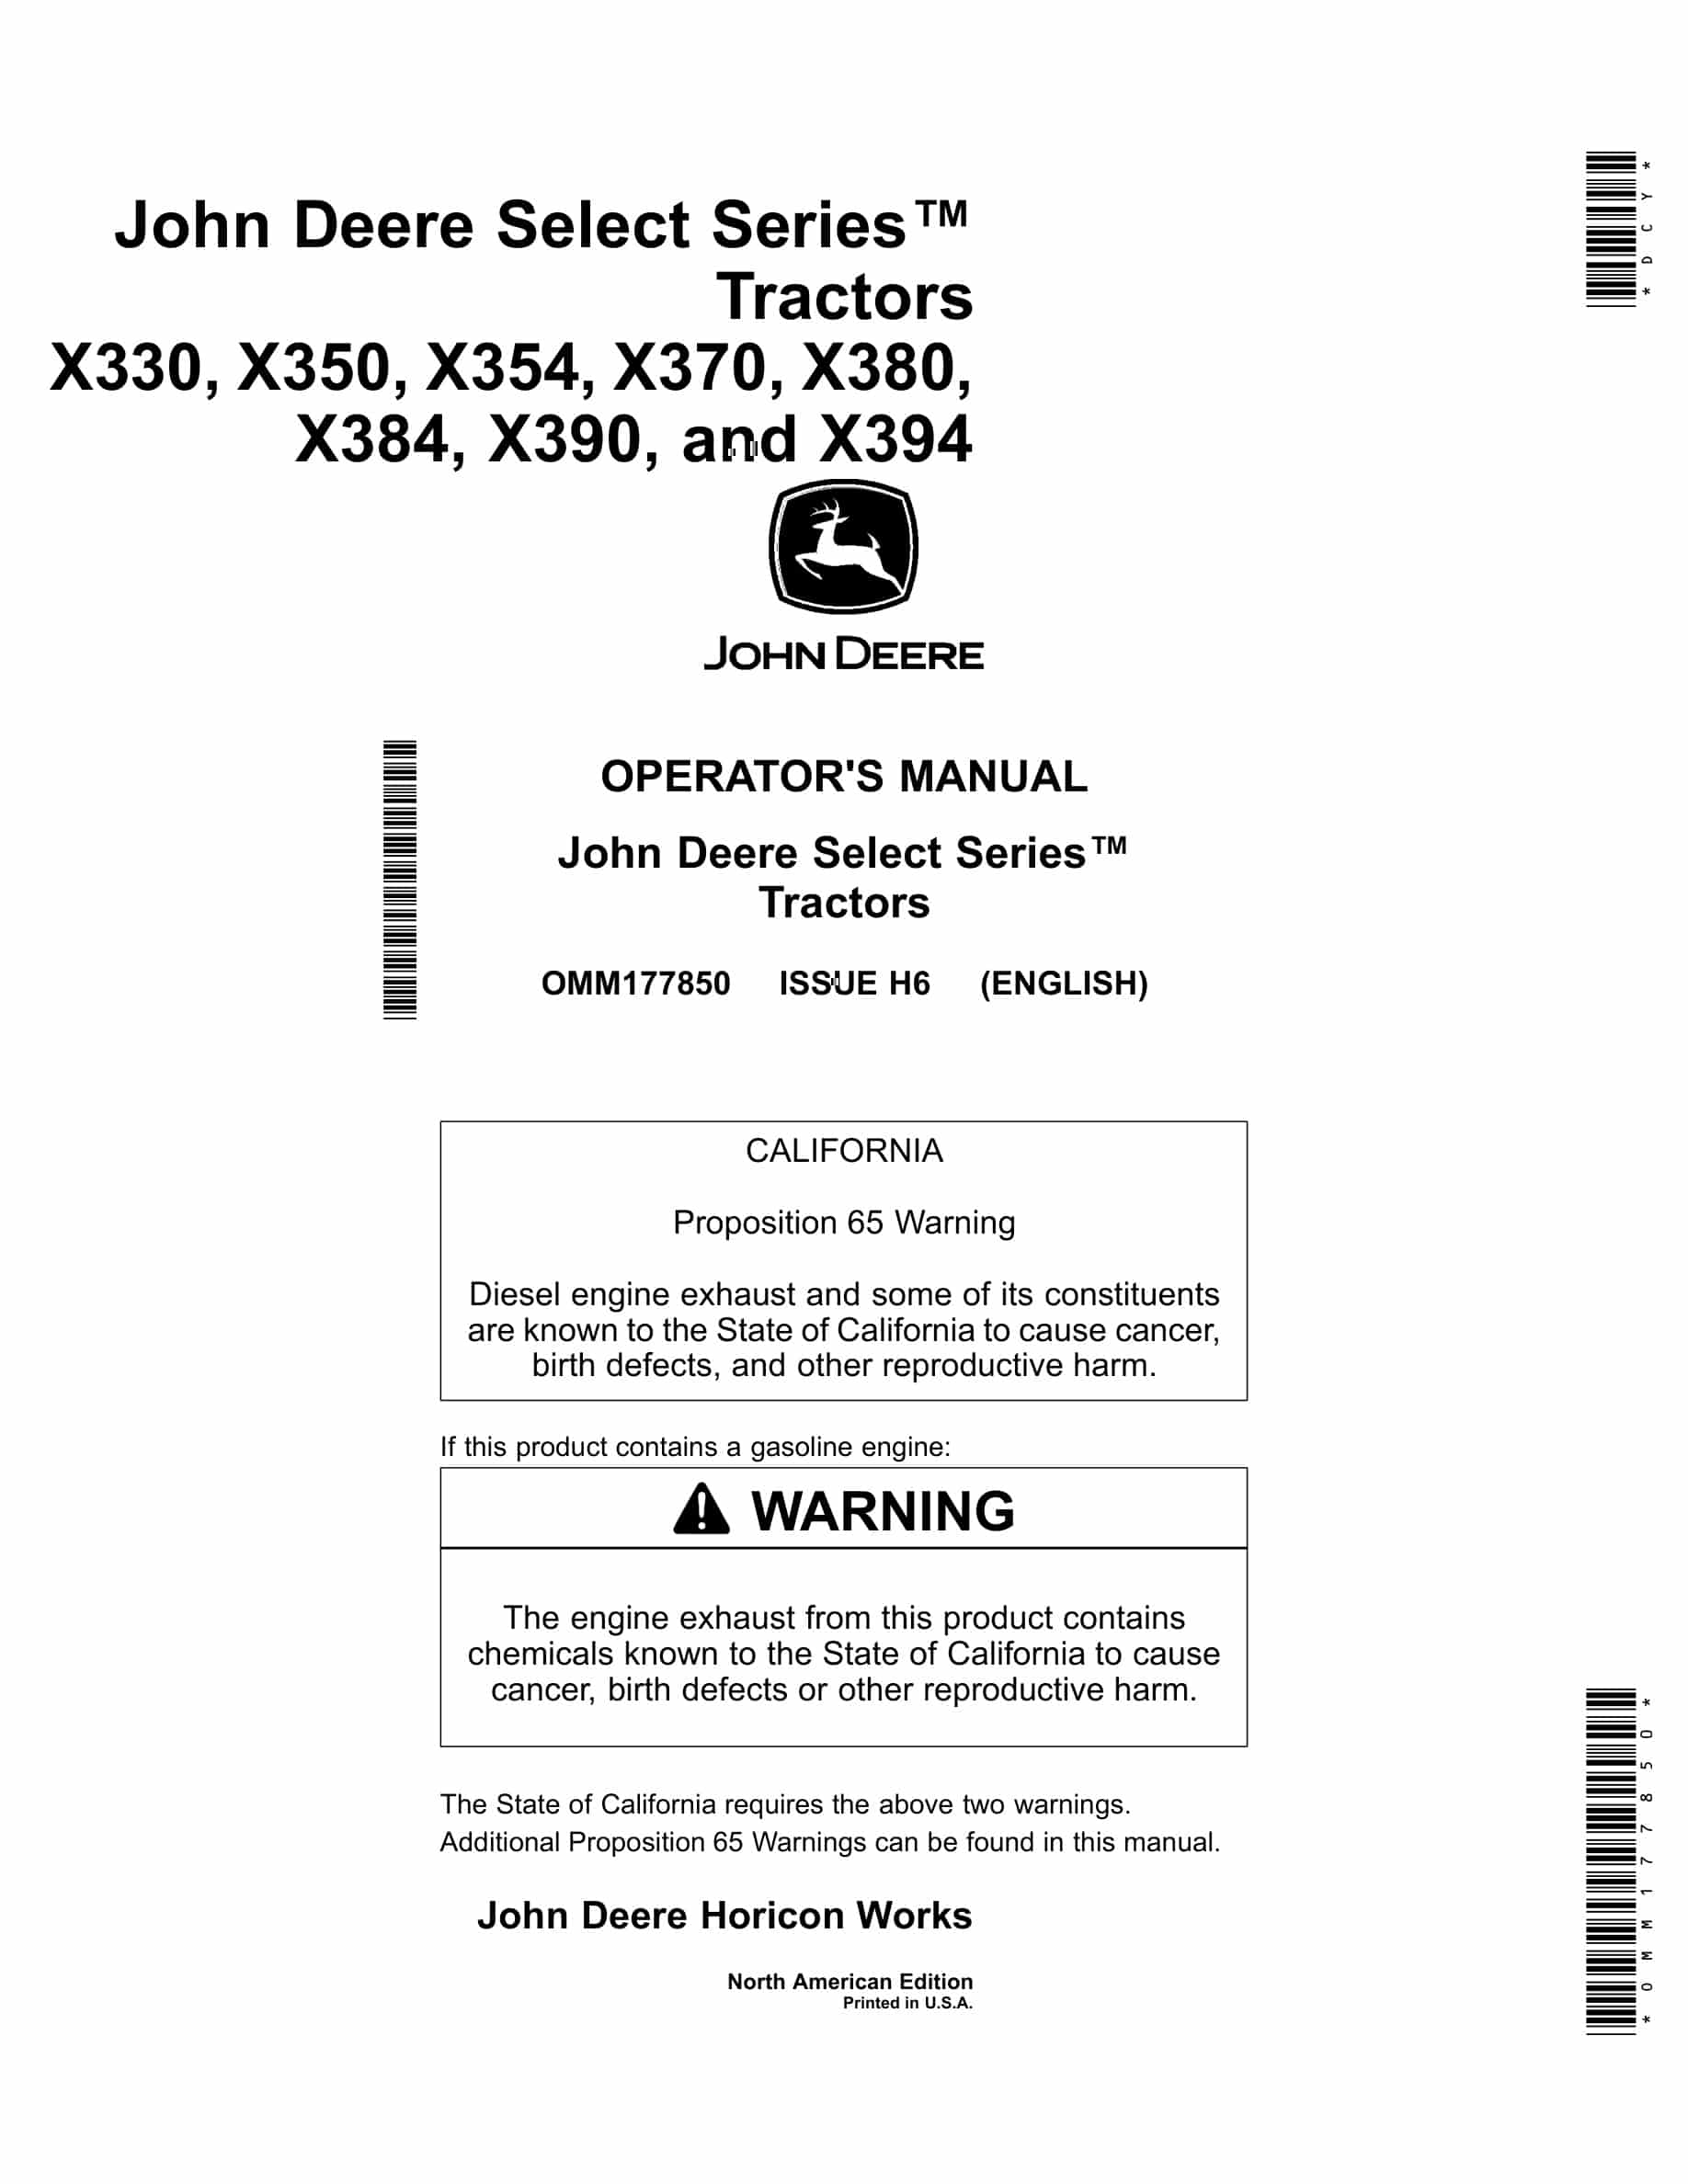 John Deere X330, X350, X354, X370, X380, X384, X390, and X394 Tractor Operator Manual OMM177850-1